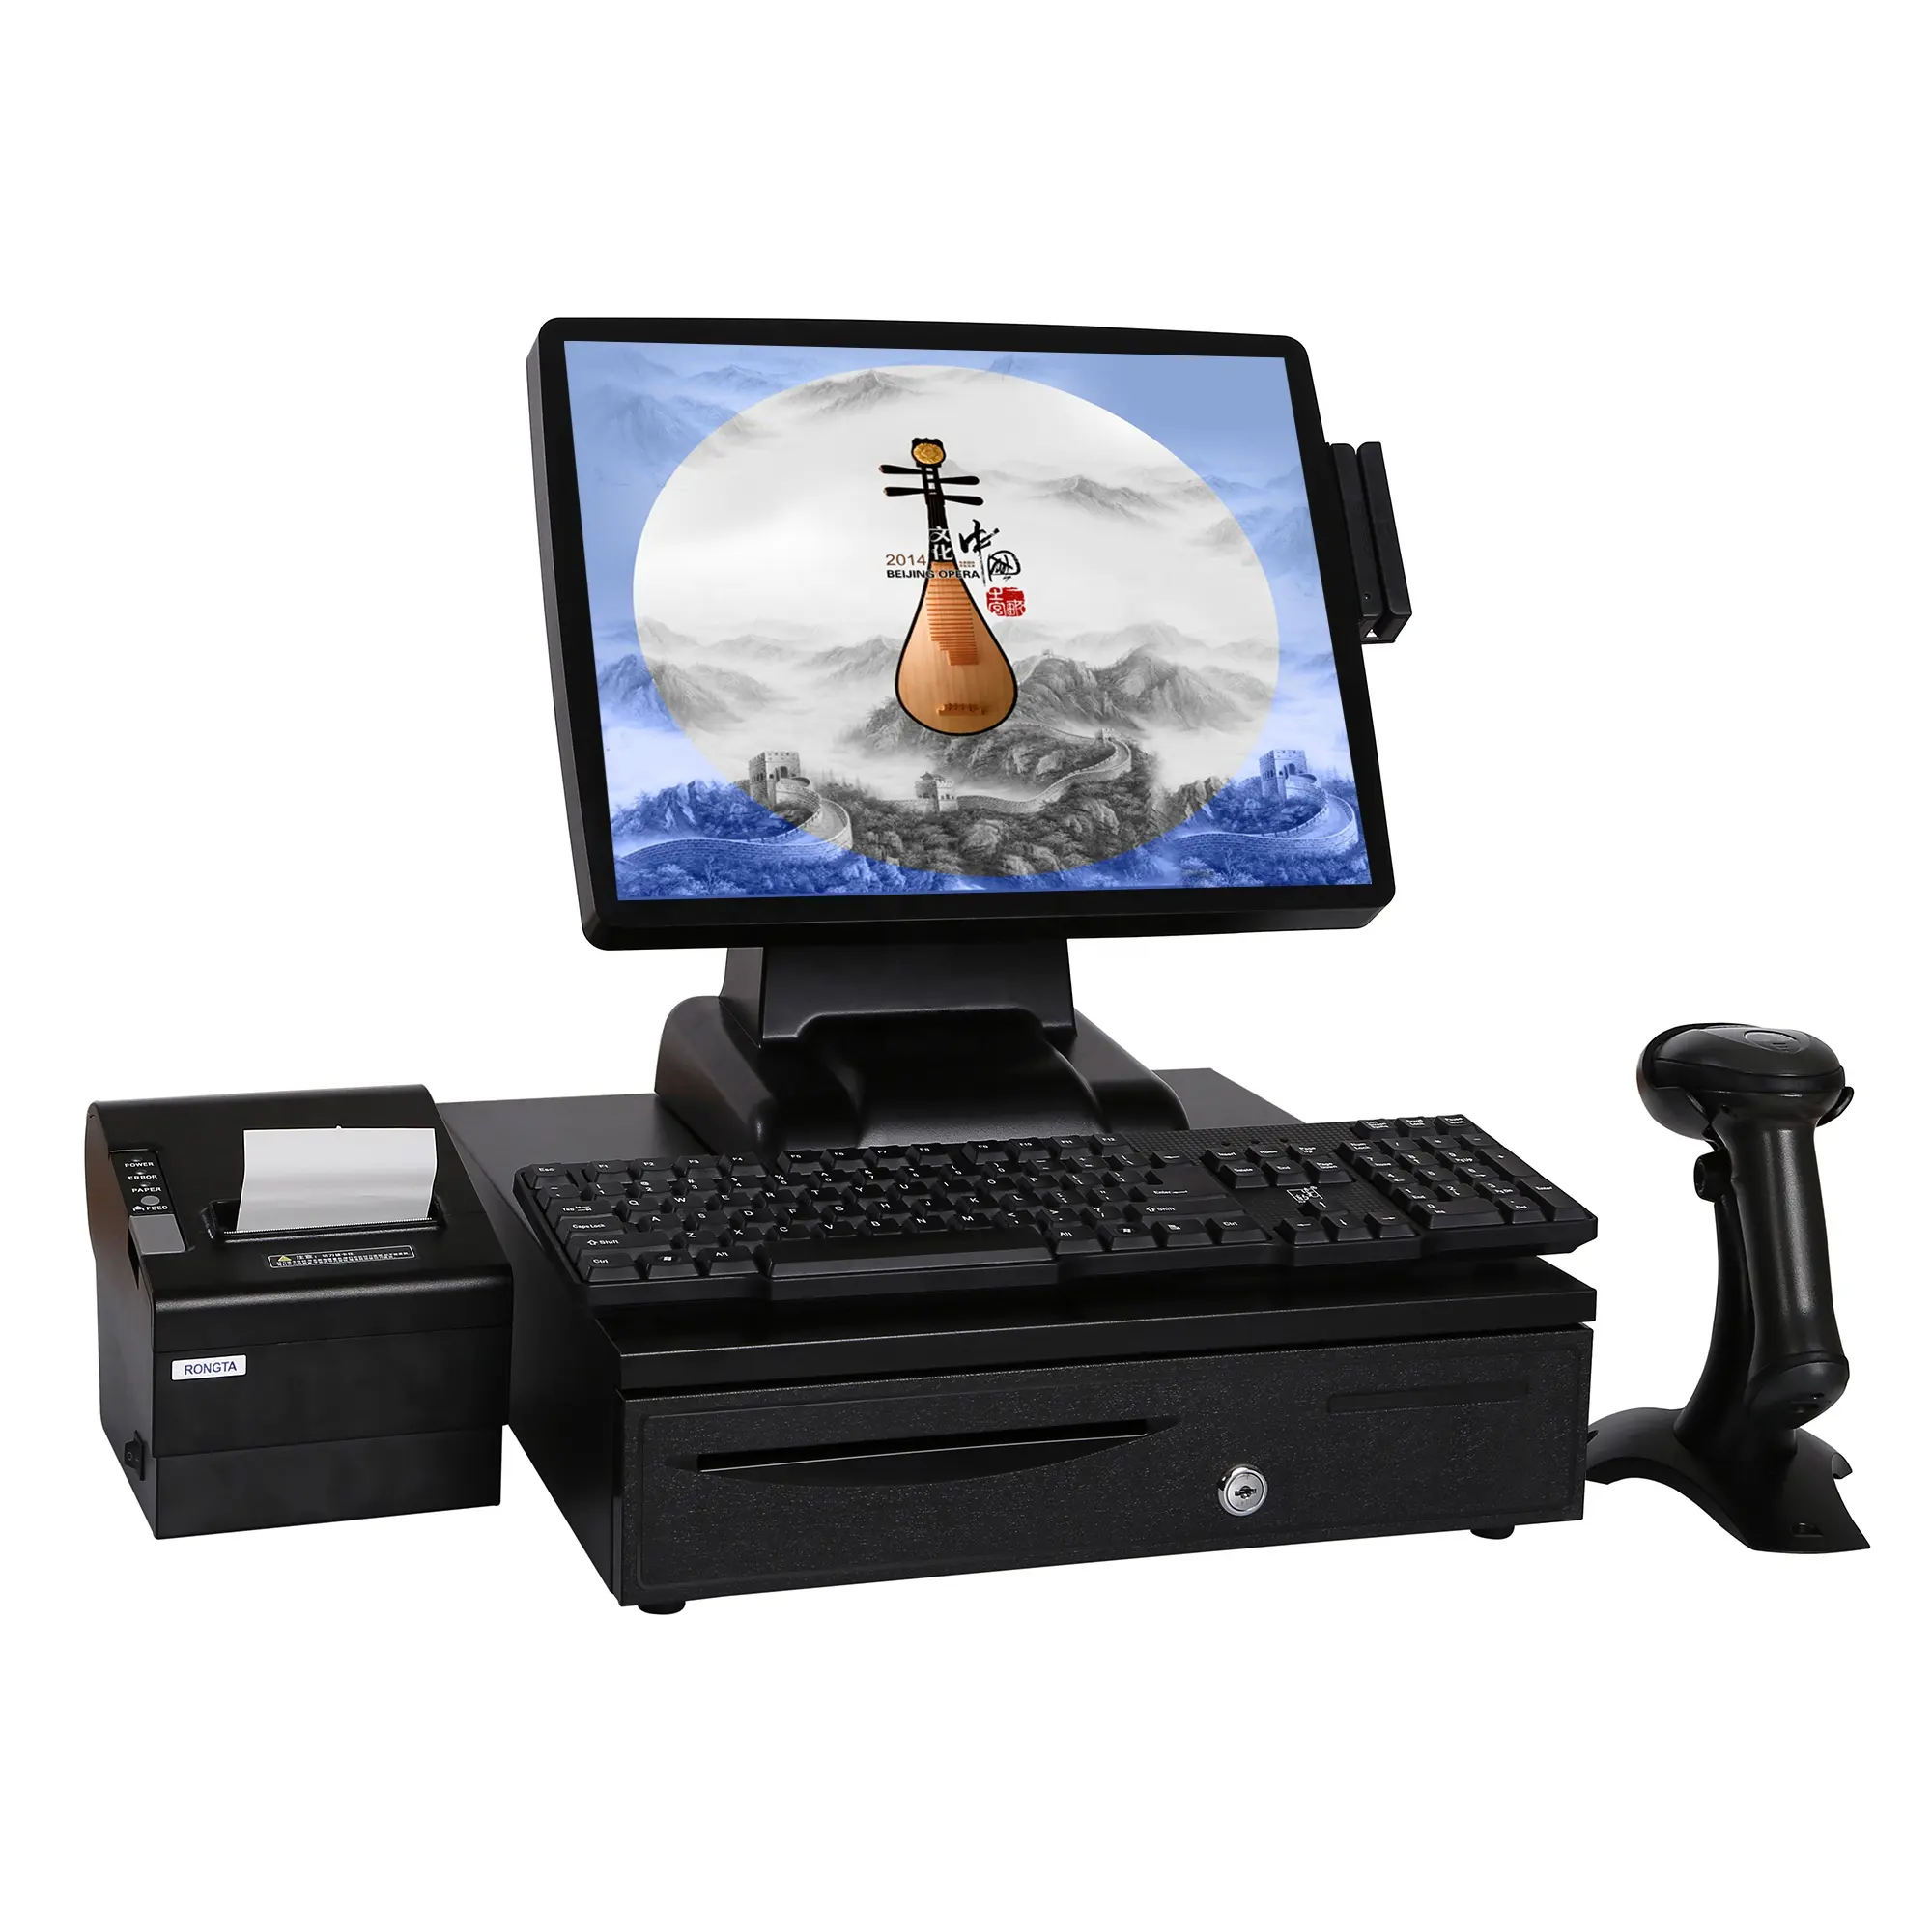 Кассовый аппарат POS с двойным экраном и клавиатурой, устройство для сканирования, терминал для супермаркетов, ресторанов, POS-система